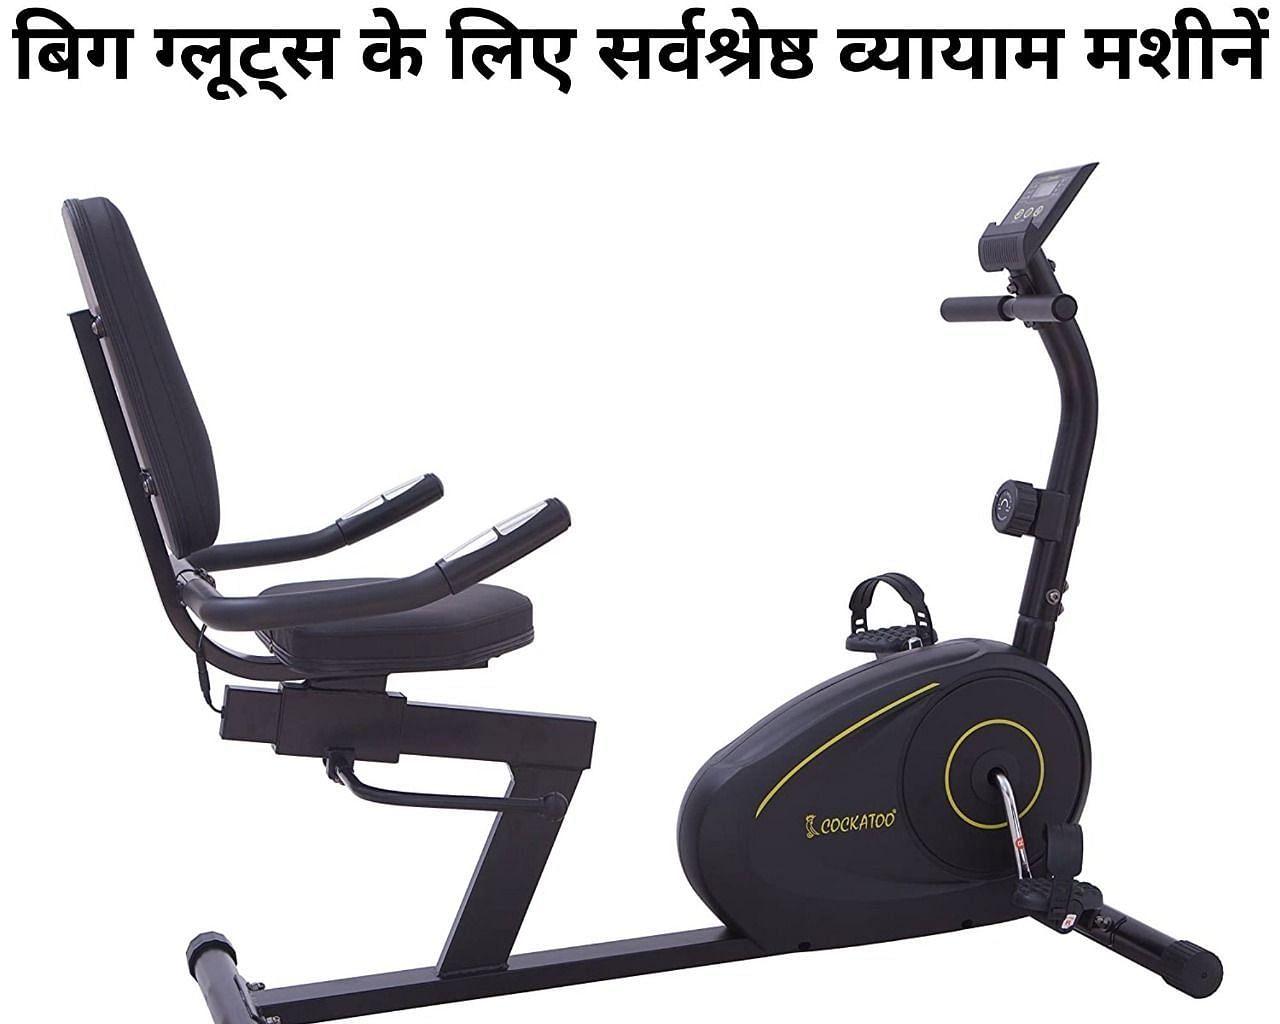 बिग ग्लूट्स के लिए सर्वश्रेष्ठ व्यायाम मशीनें (फोटो - sportskeeda hindi)